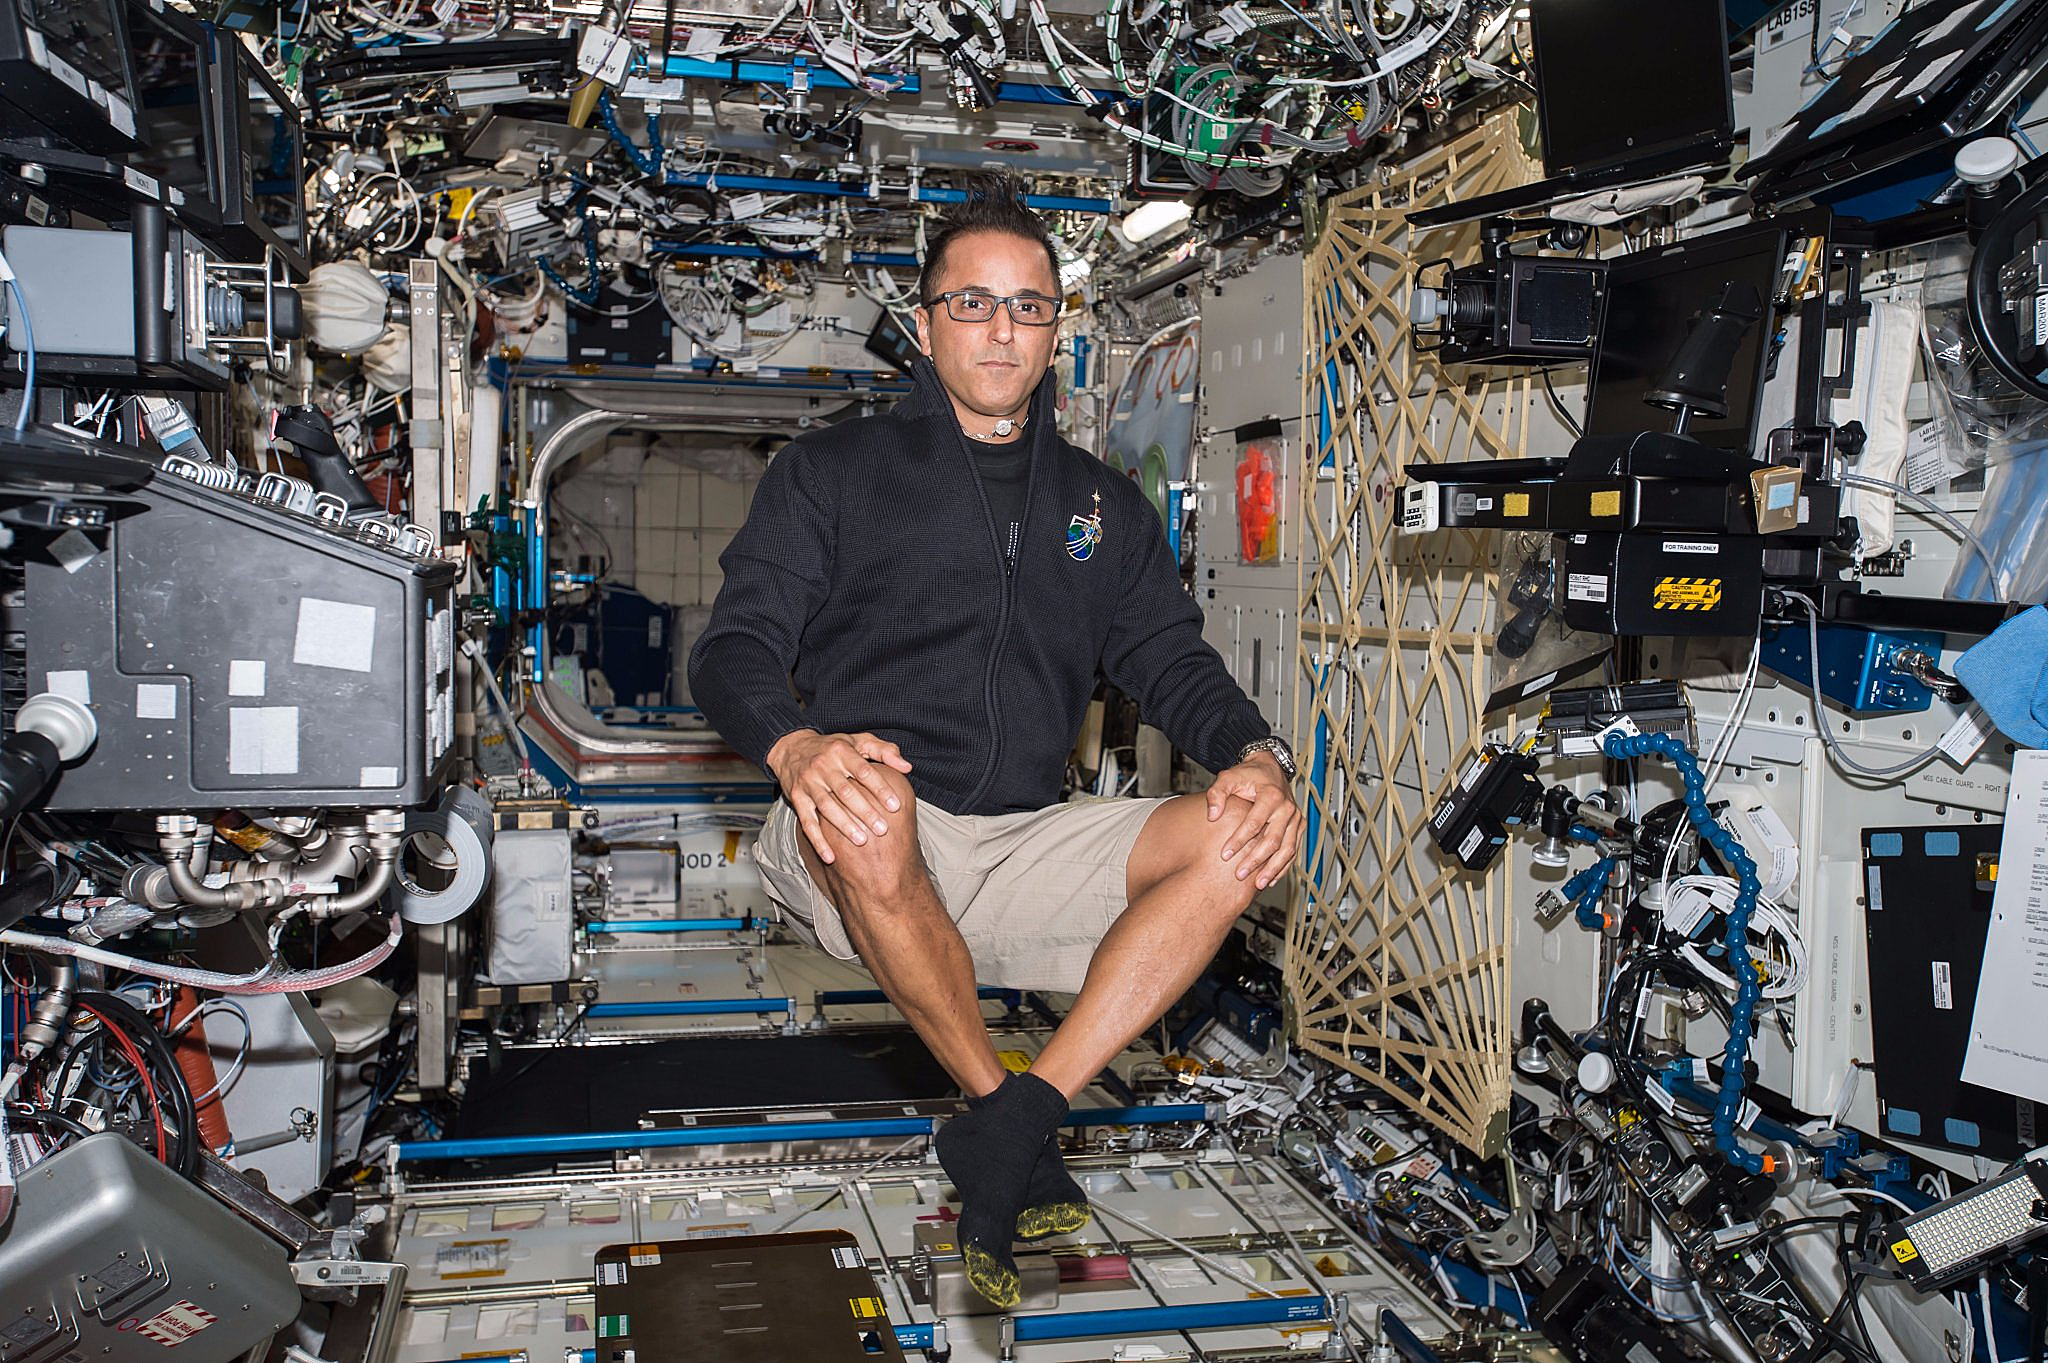 Joe Acaba floats inside the space station